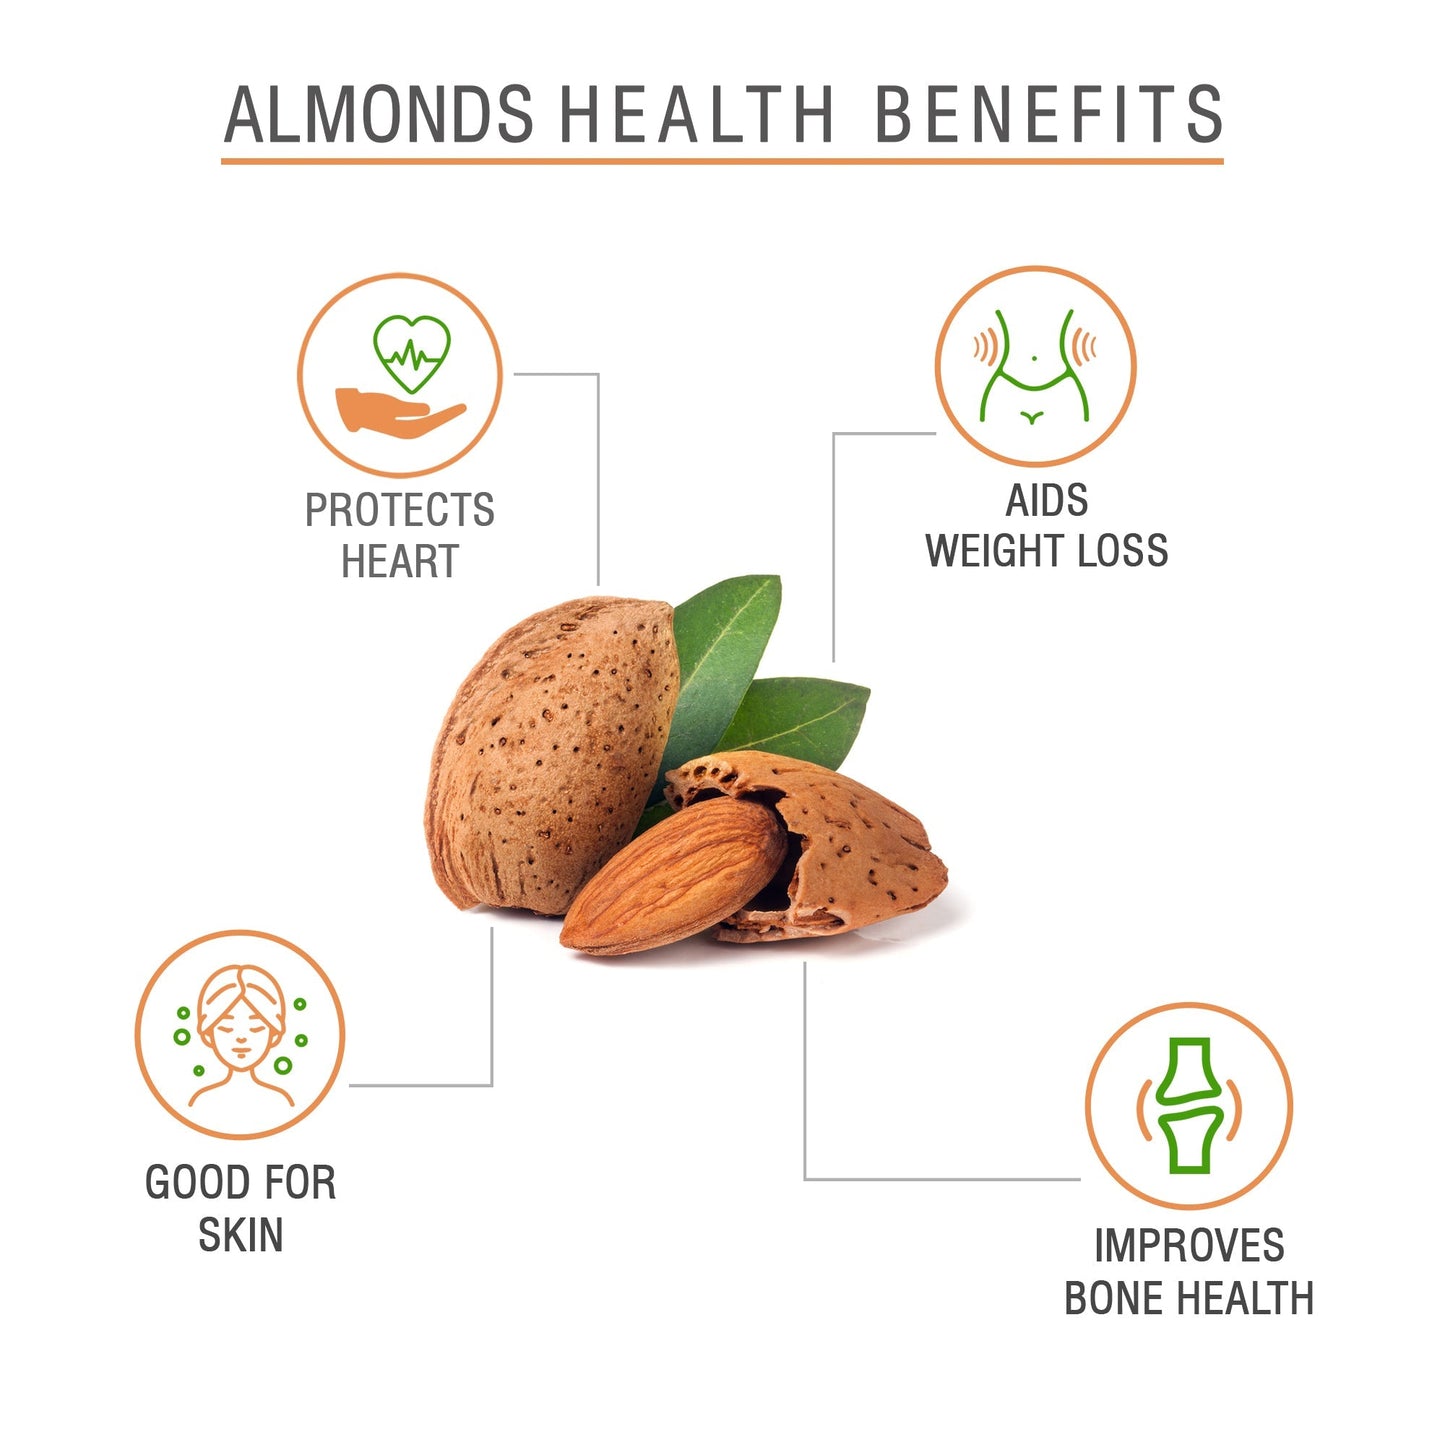 Sunway 100% Natural Premium California Almonds 150g (JAR)